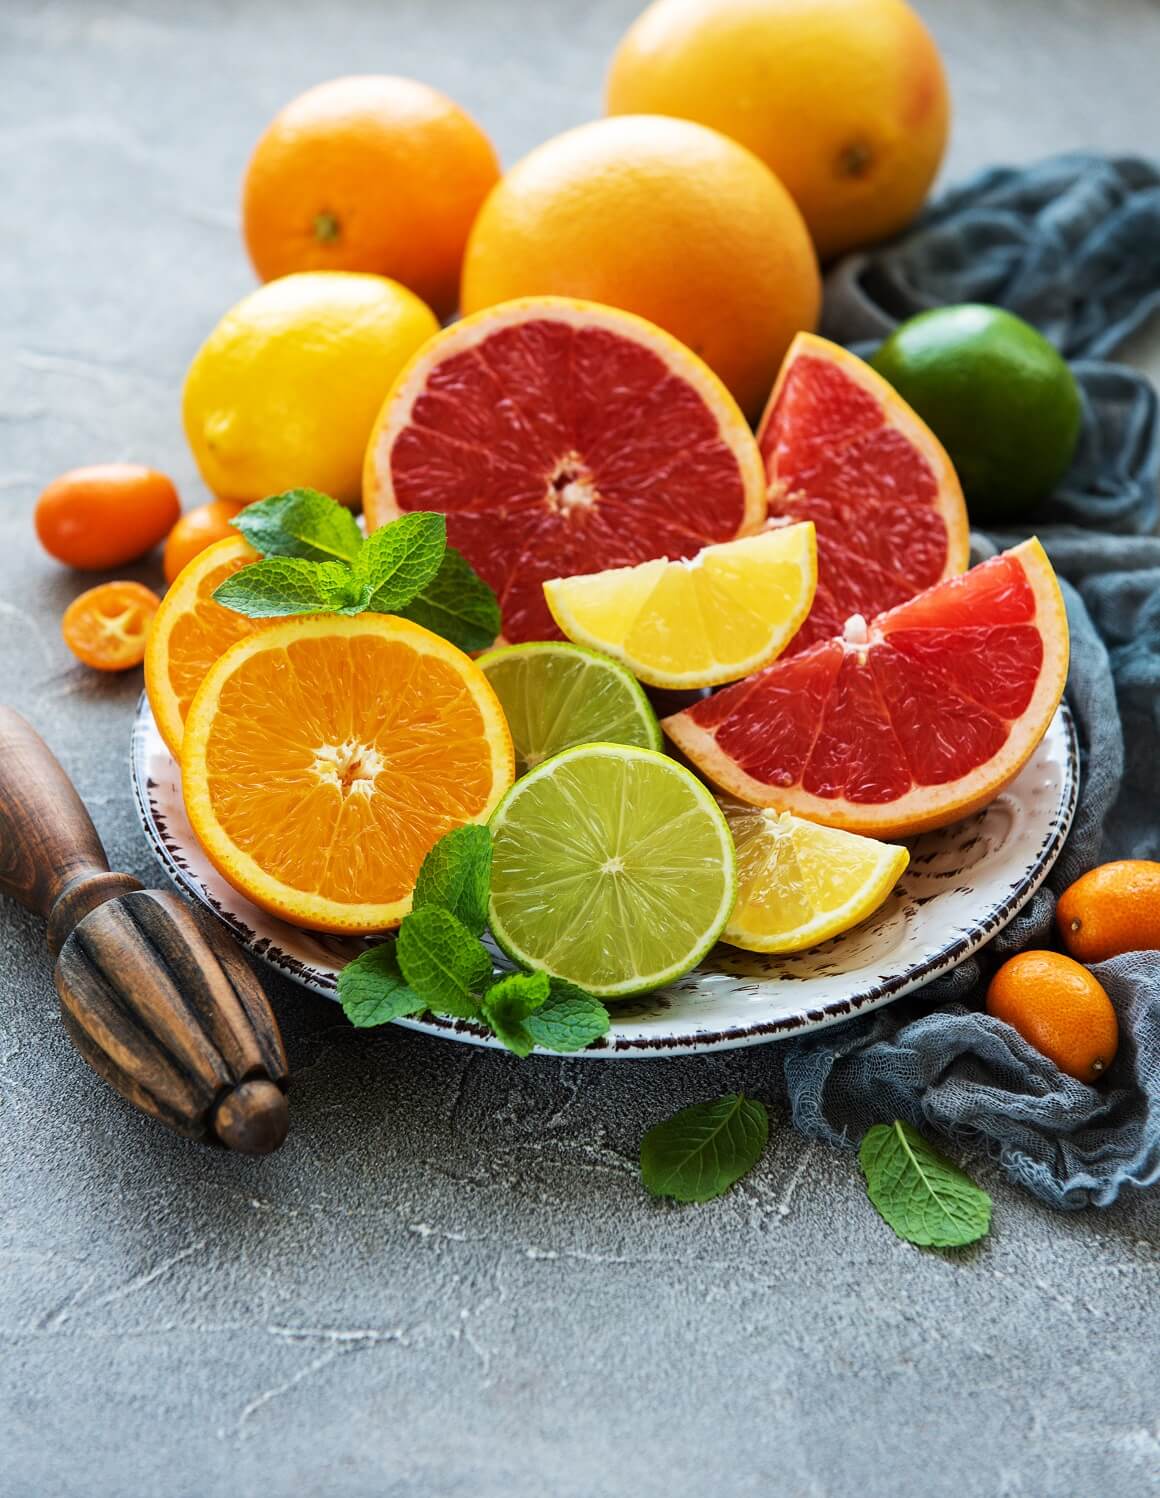 Agrumi poput naranči, limuna i grejpa izvrsni su izvori vitamina C, koji je neophodan za sintezu kolagena